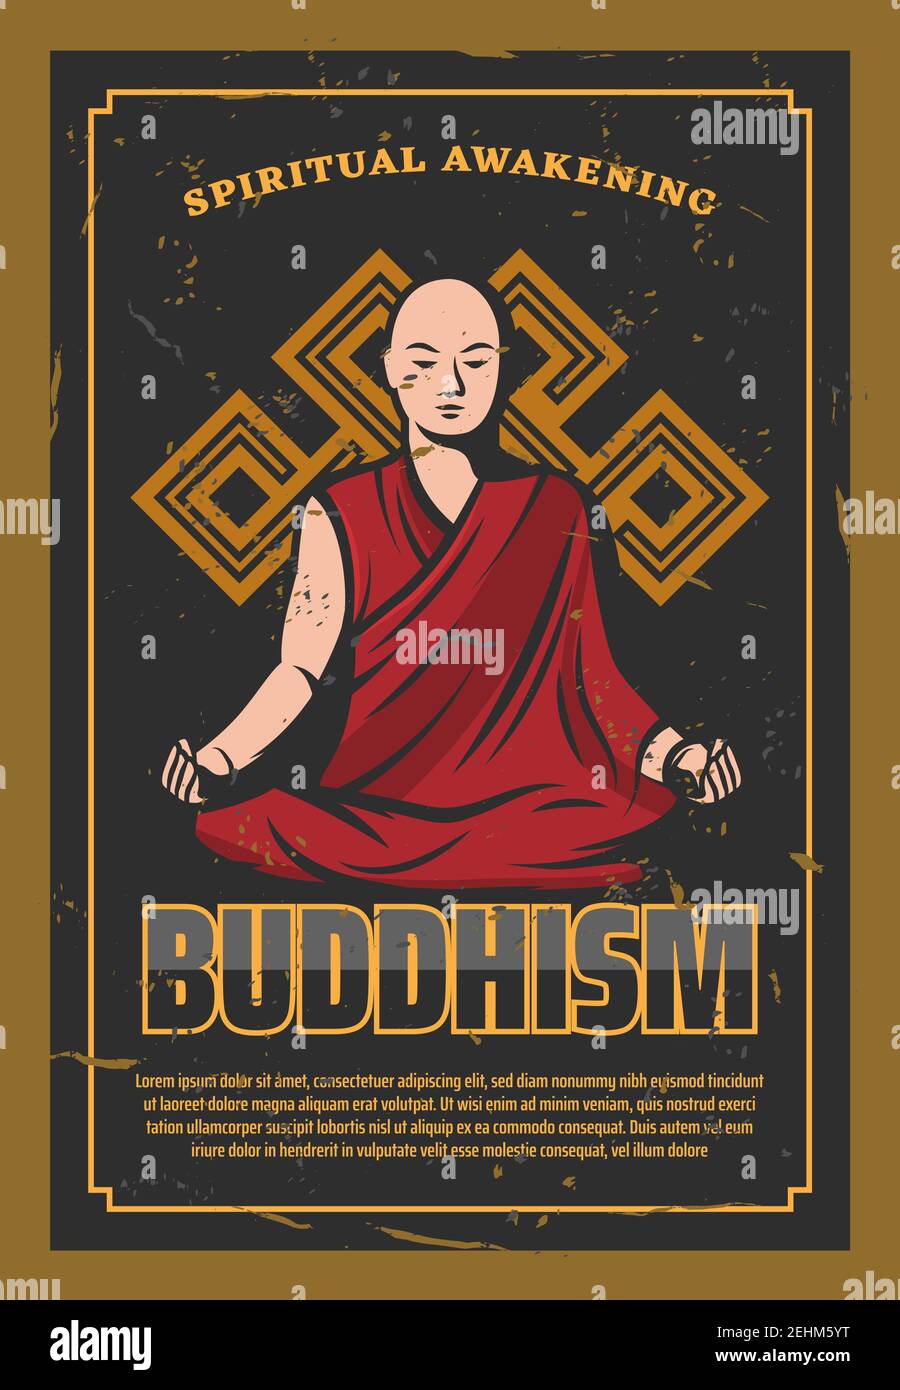 Buddhismus Orientalische Religion Poster mit Glatze Mönch sitzen in Lotus Pose. Religiöse, ruhige Person aus Indien in roter Robe, die Meditation mit endlosem Kno macht Stock Vektor